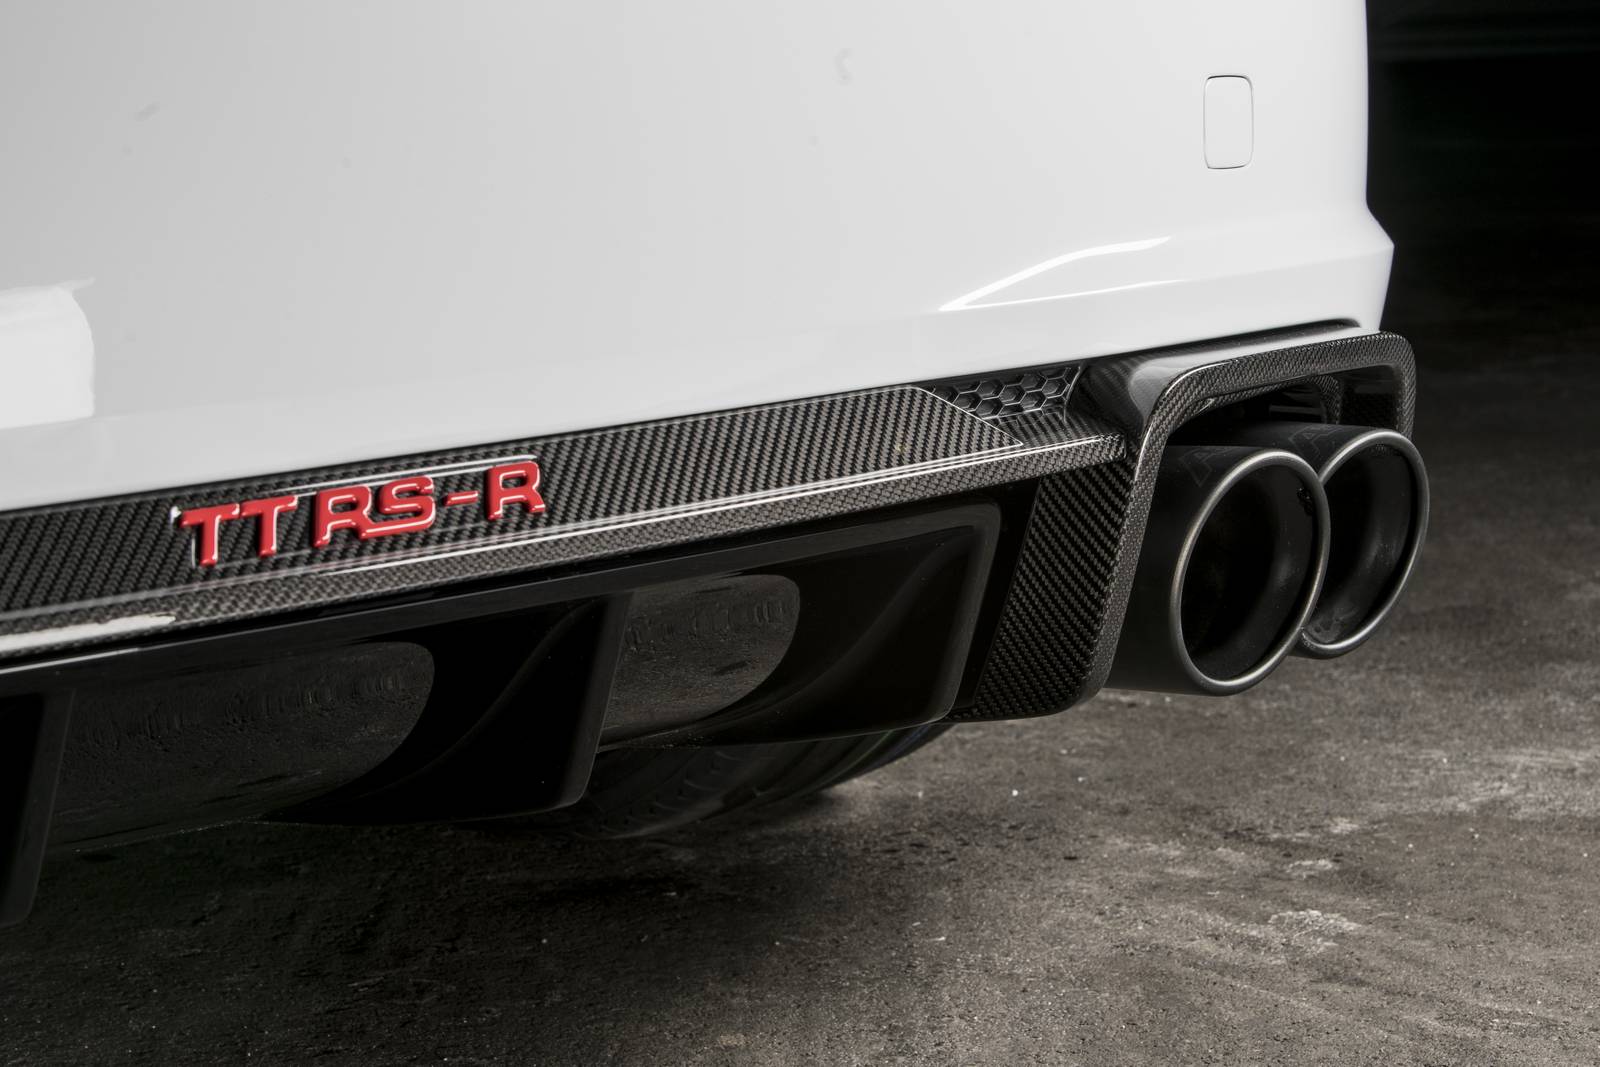 Audi TT RS-R мощностью 500 л.с. тюнинг-ателье ABT